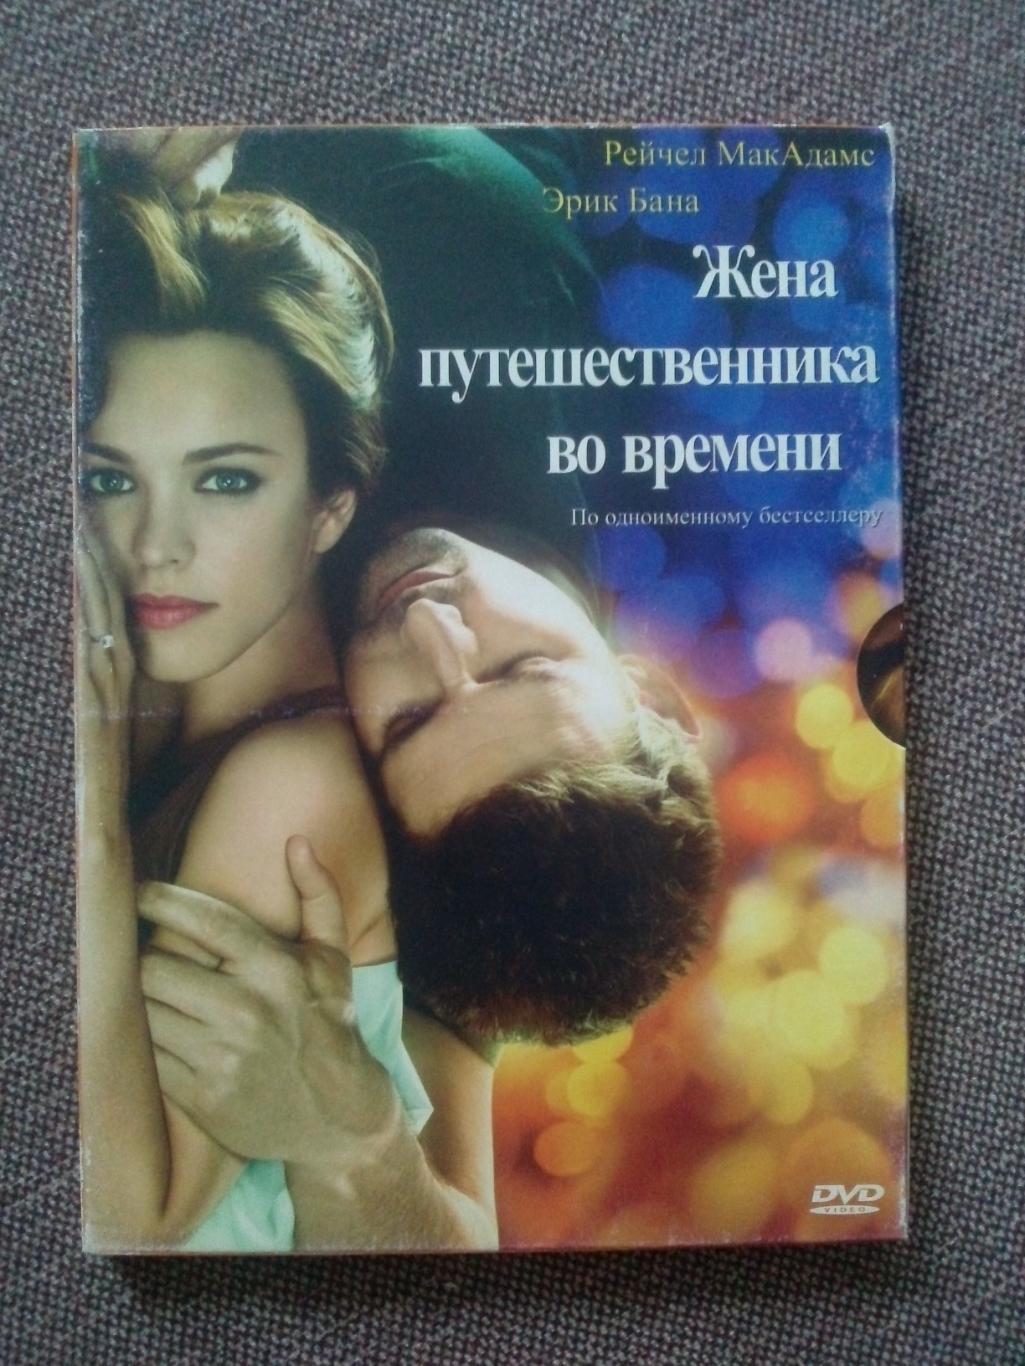 DVD диск : фильм Жена путешественника во времени 2009 г. США (лицензия)